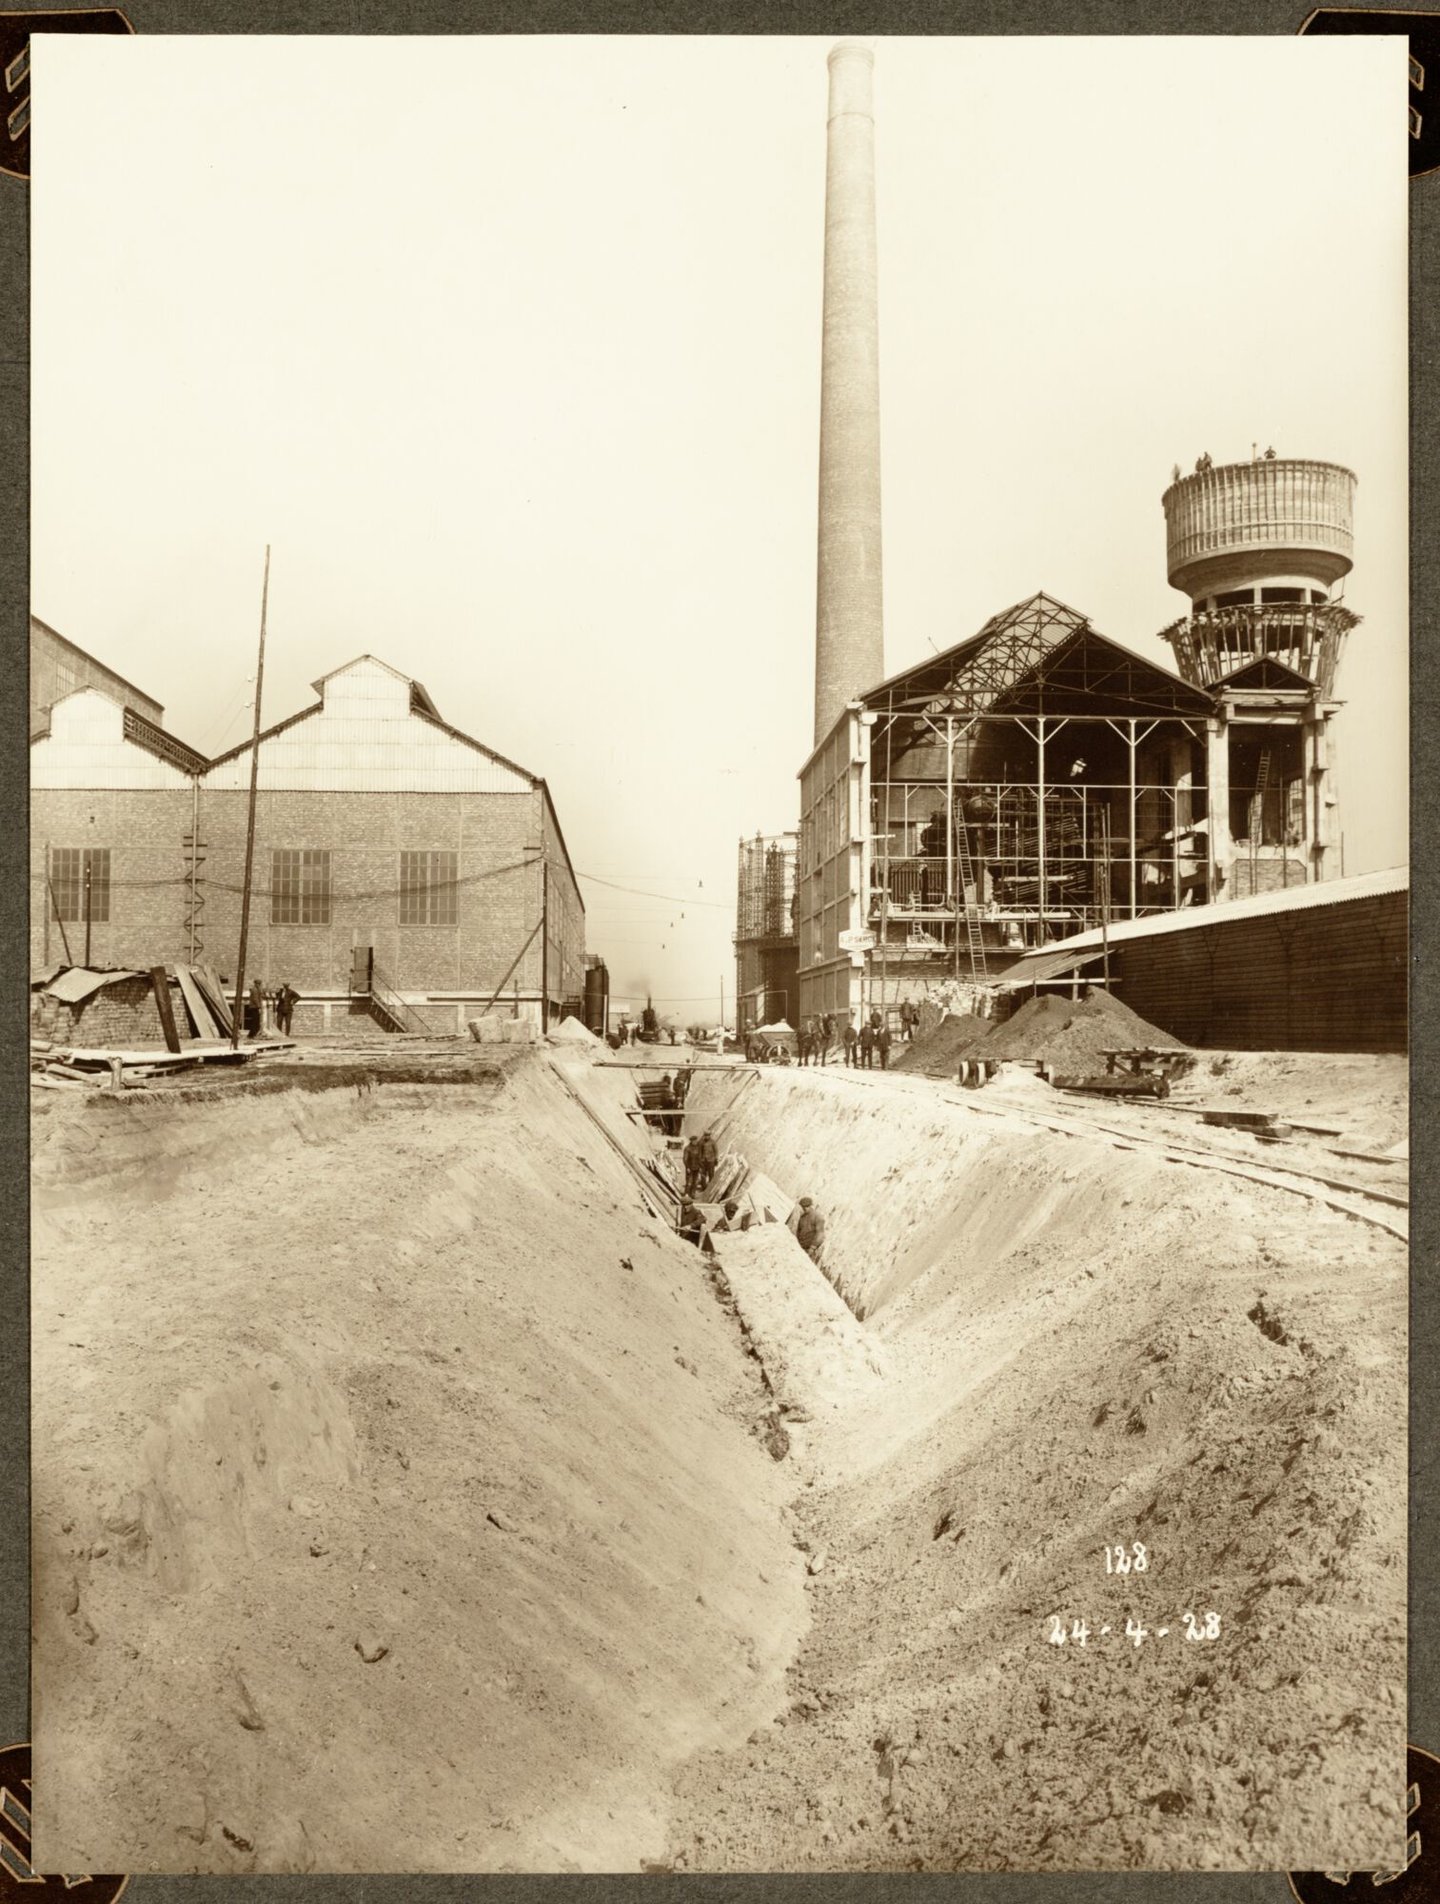 Bouw van generatorengebouw en ammoniakfabriek van cokesfabriek Kuhlmann in Zelzate